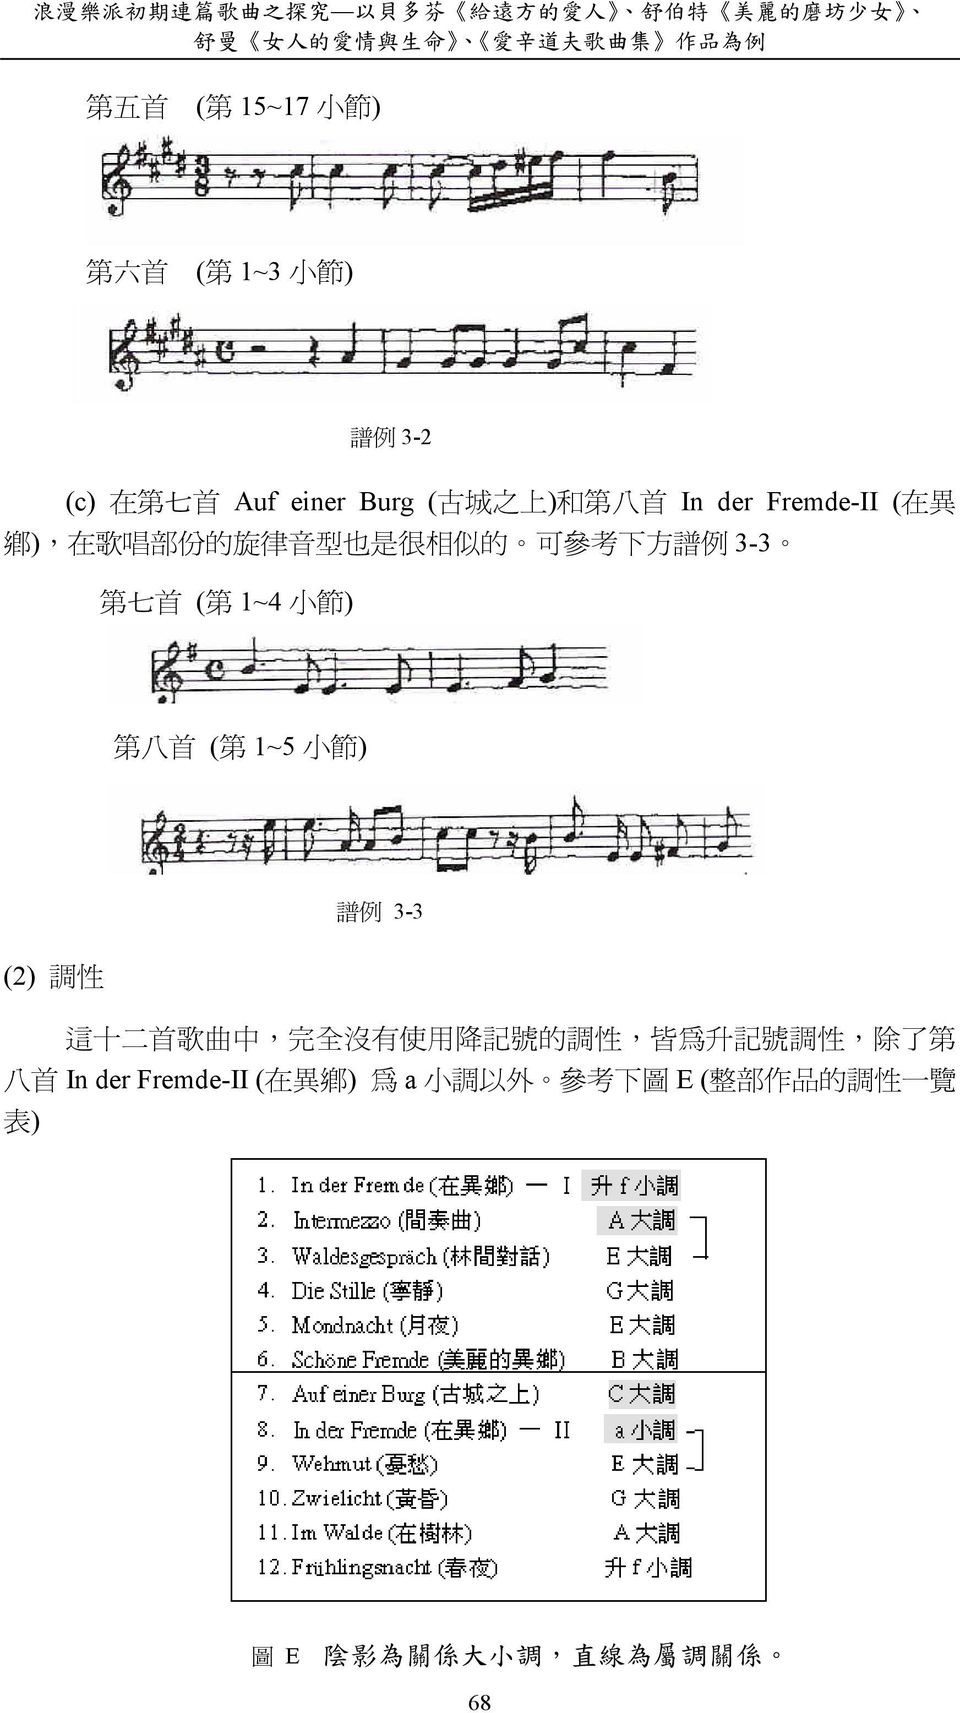 譜 例 3-3 第 七 首 ( 第 1~4 小 節 ) 第 八 首 ( 第 1~5 小 節 ) 譜 例 3-3 (2) 調 性 這 十 二 首 歌 曲 中, 完 全 沒 有 使 用 降 記 號 的 調 性, 皆 為 升 記 號 調